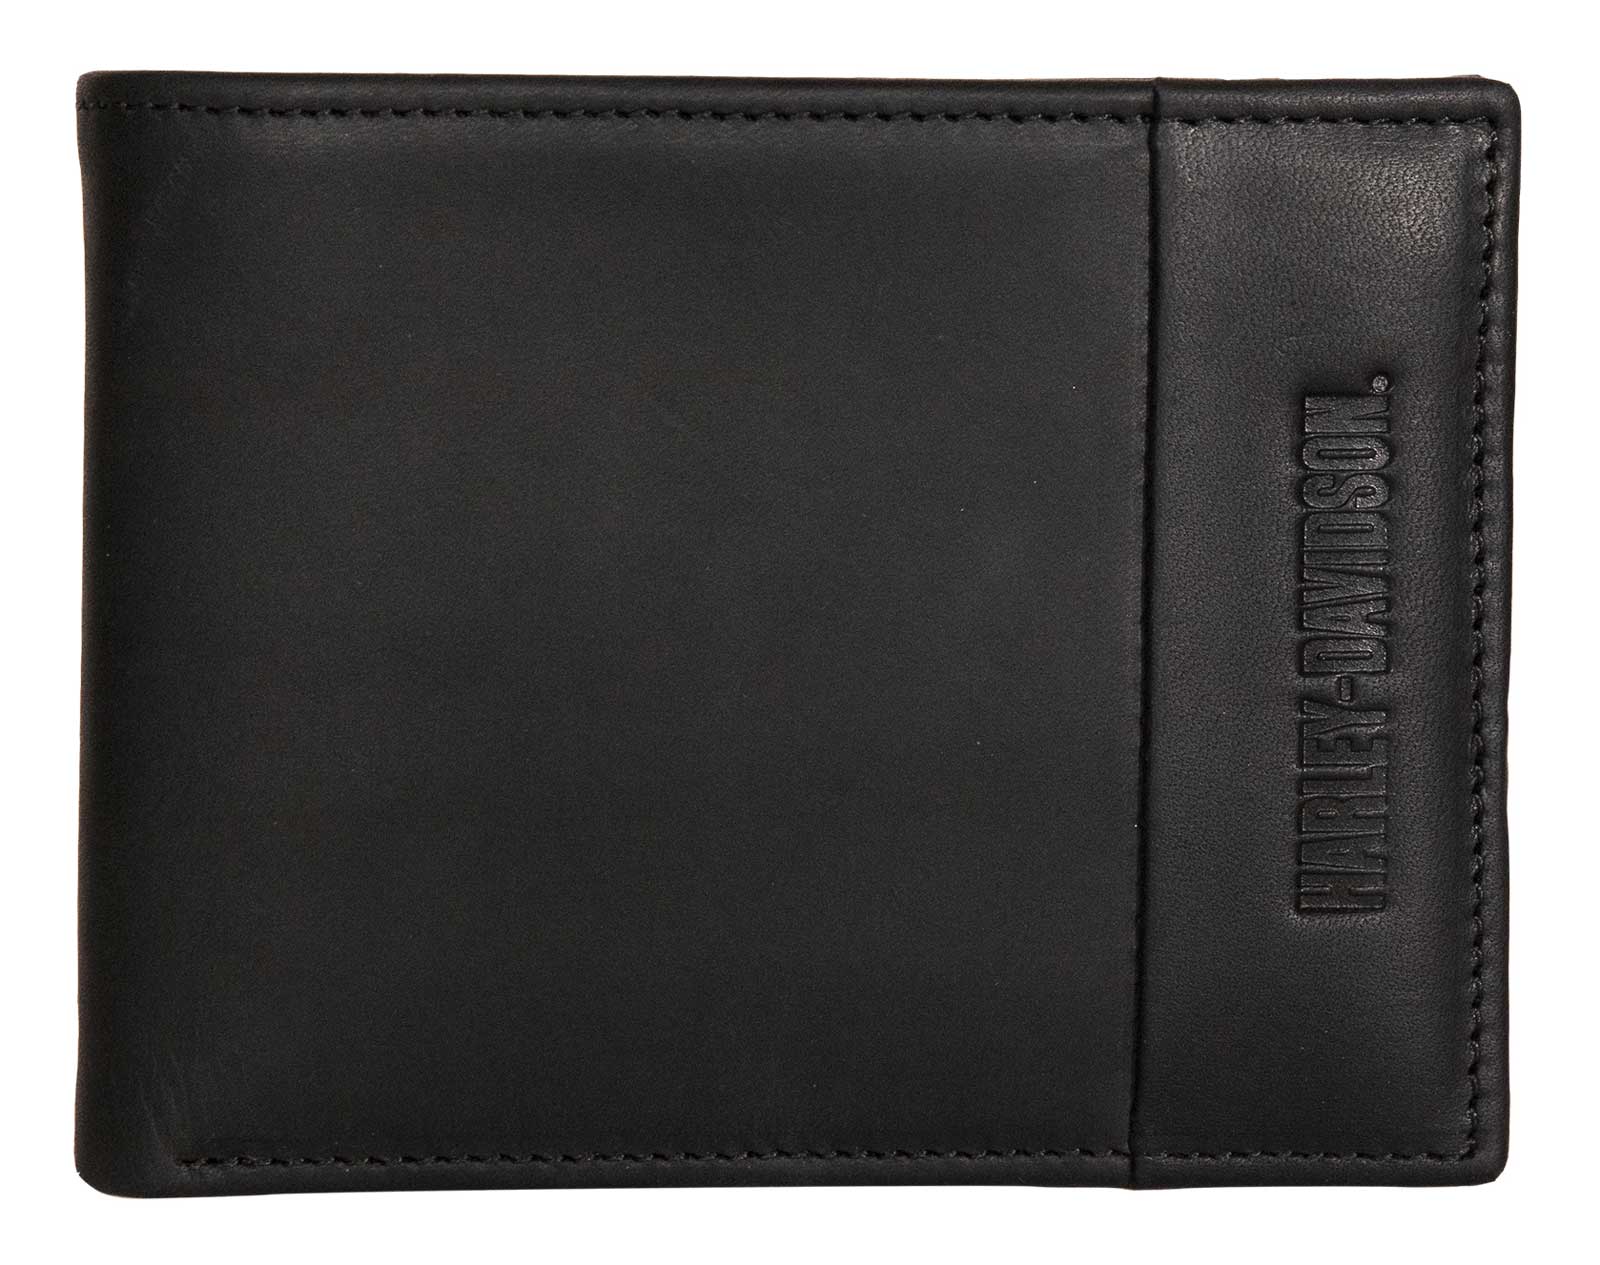 Wallet - Black leather bi-fold wallet